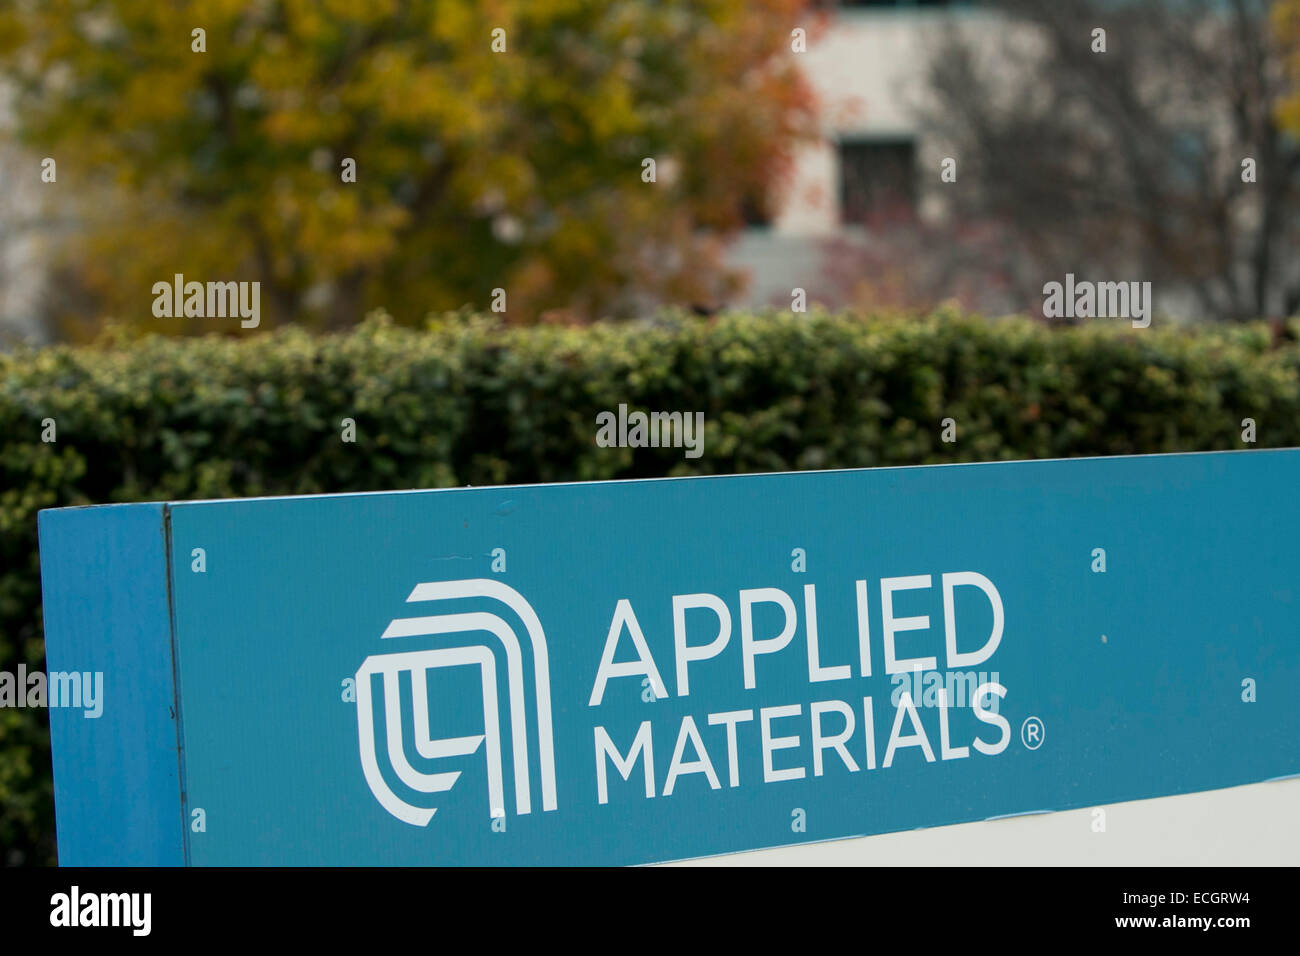 La sede del fabricante de semiconductores Applied Materials. Foto de stock